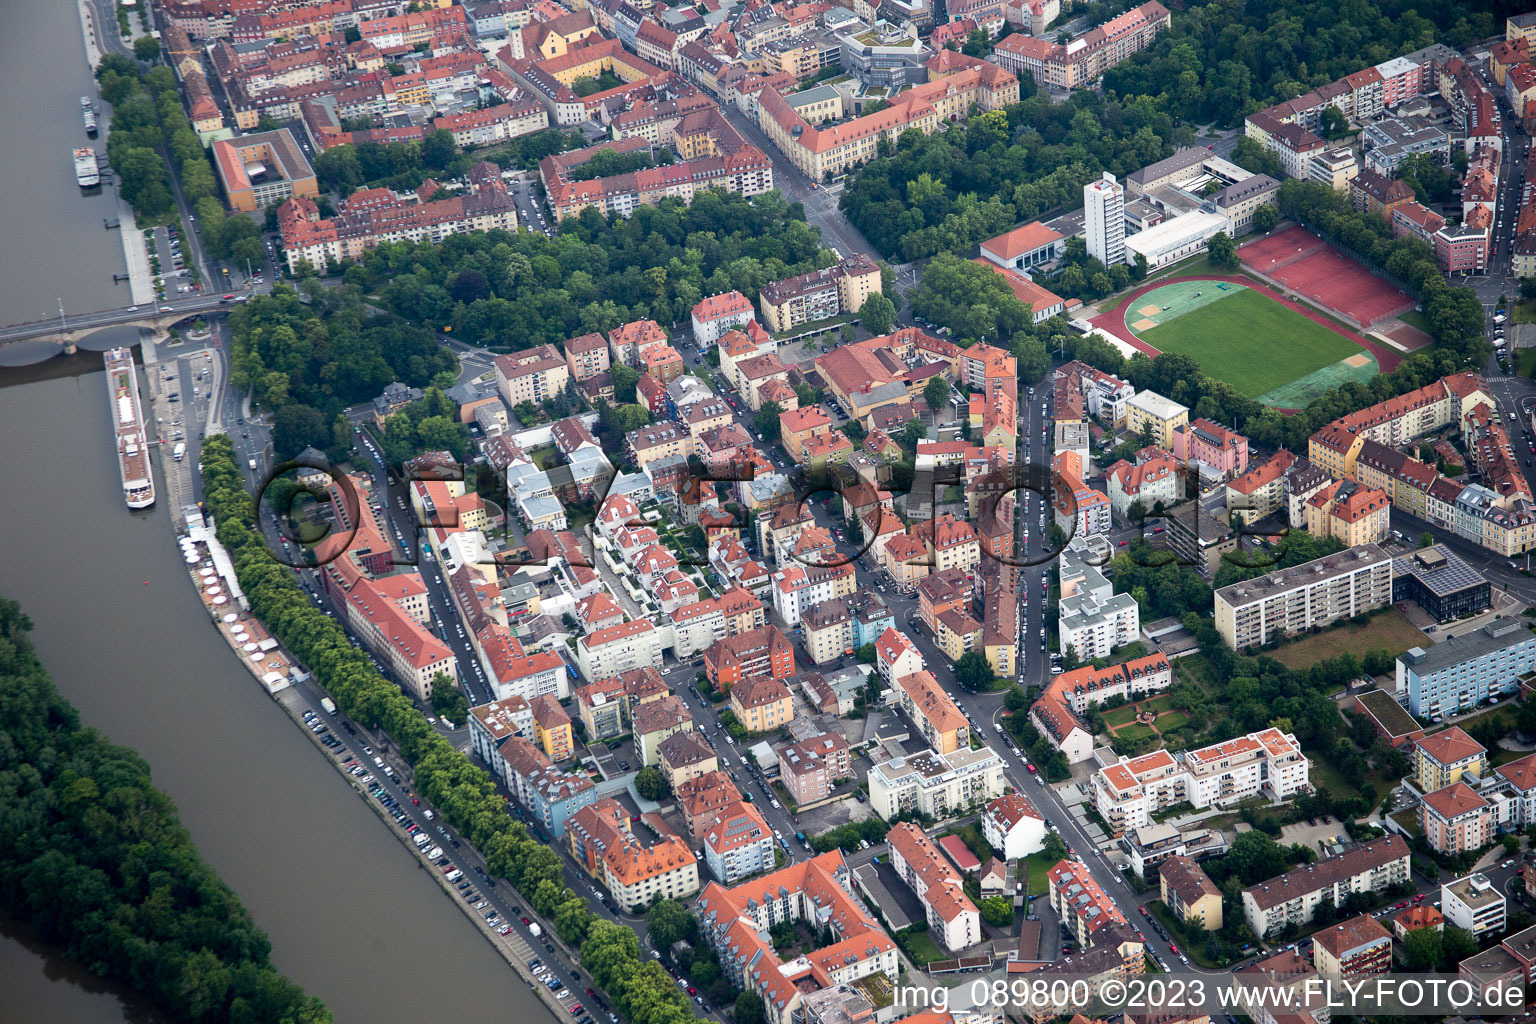 Würzburg im Bundesland Bayern, Deutschland aus der Drohnenperspektive